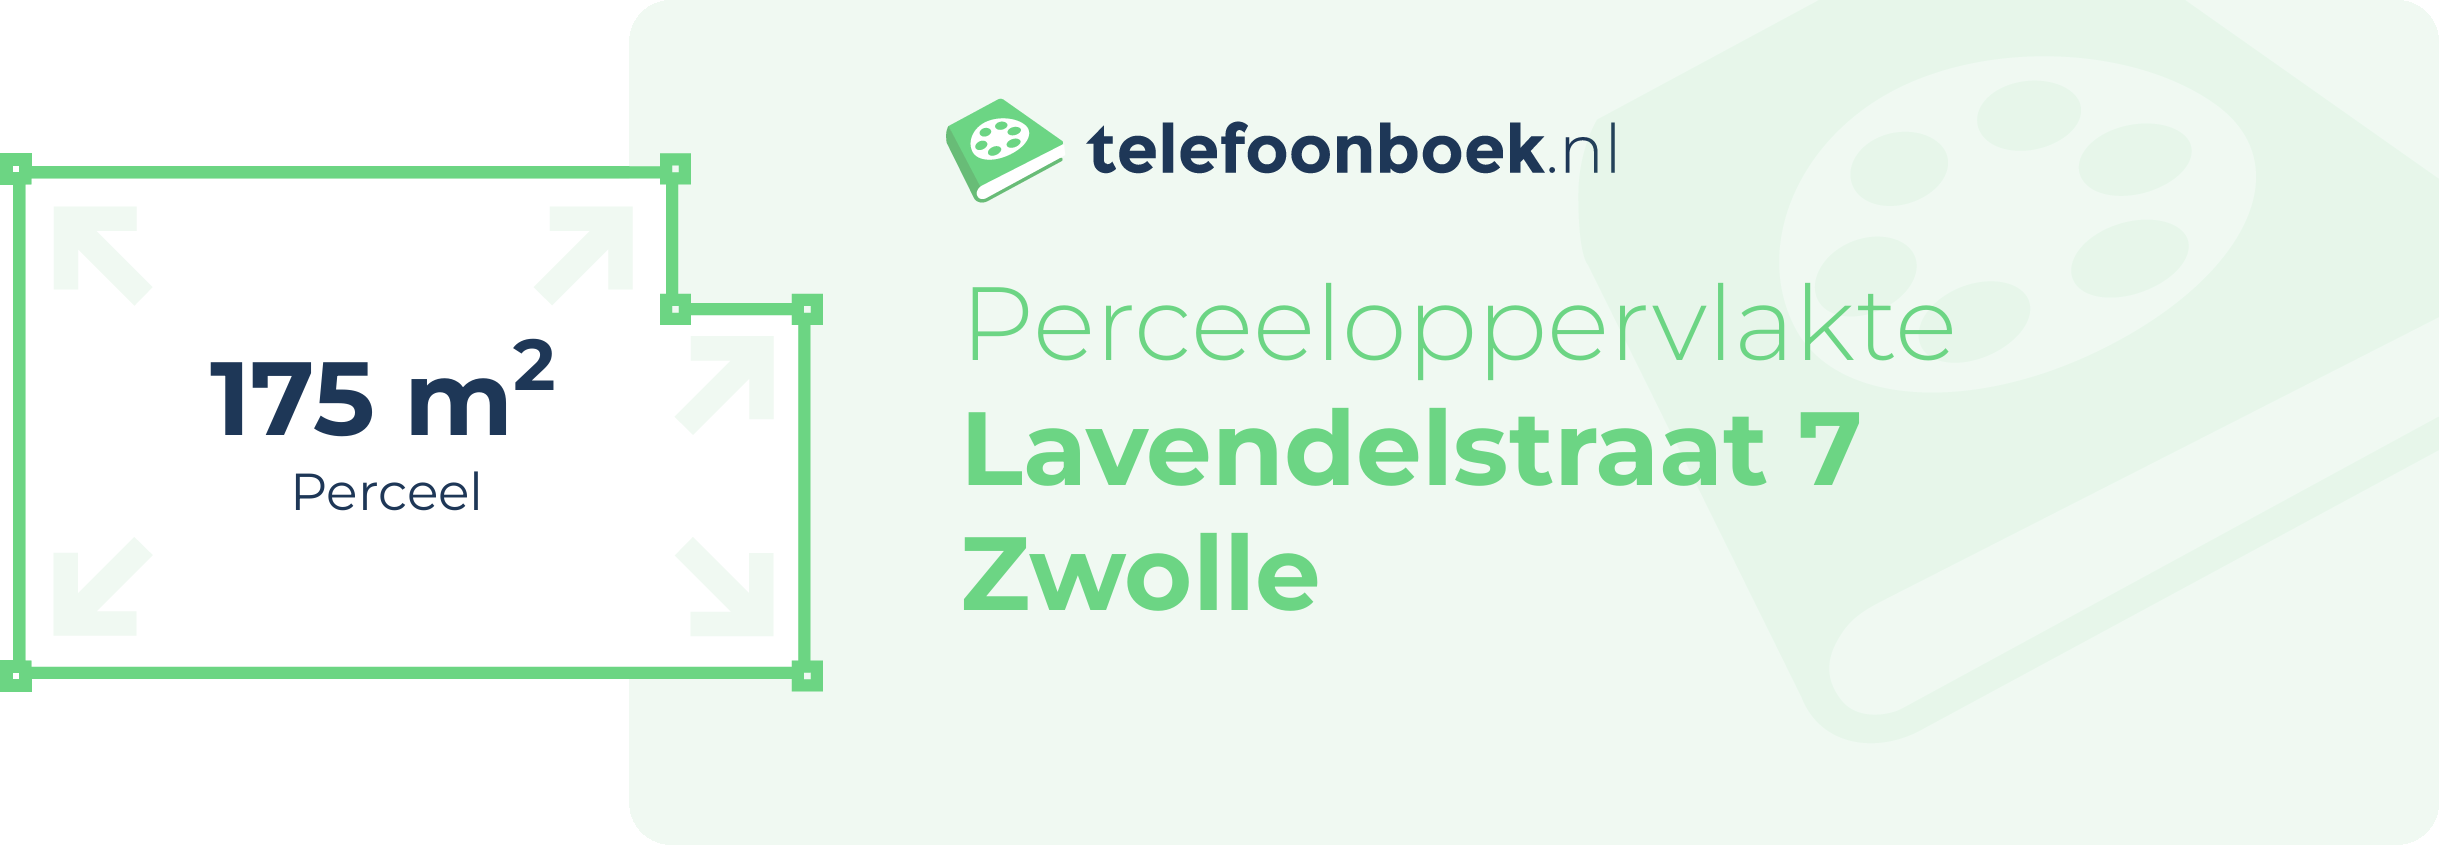 Perceeloppervlakte Lavendelstraat 7 Zwolle